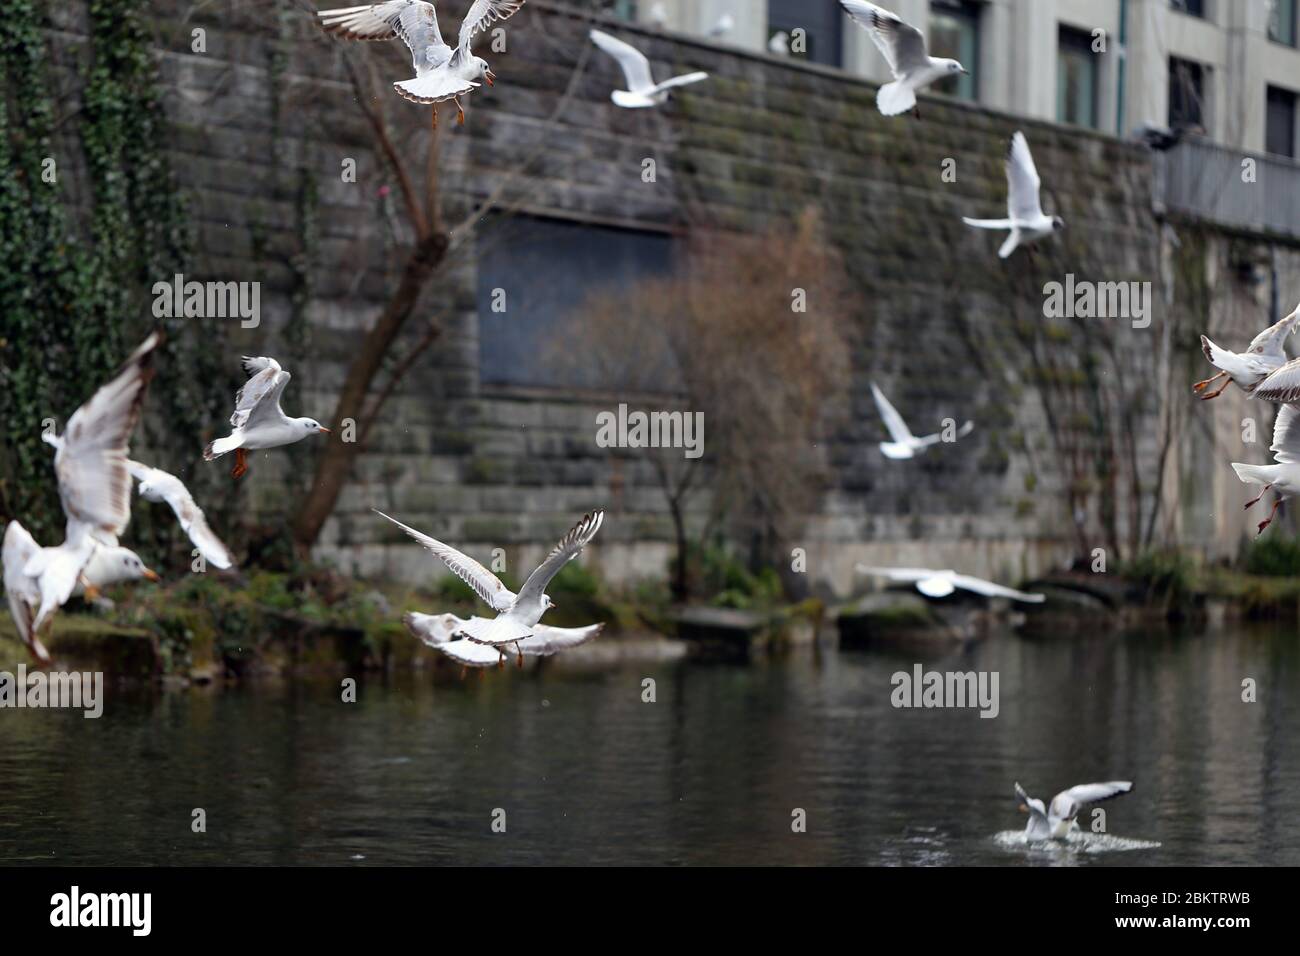 Plusieurs mouettes volent sur le dessus d'une rivière située à Zurich, en Suisse. Sur cette photo, vous pouvez voir plusieurs oiseaux blancs voler et nager. Banque D'Images